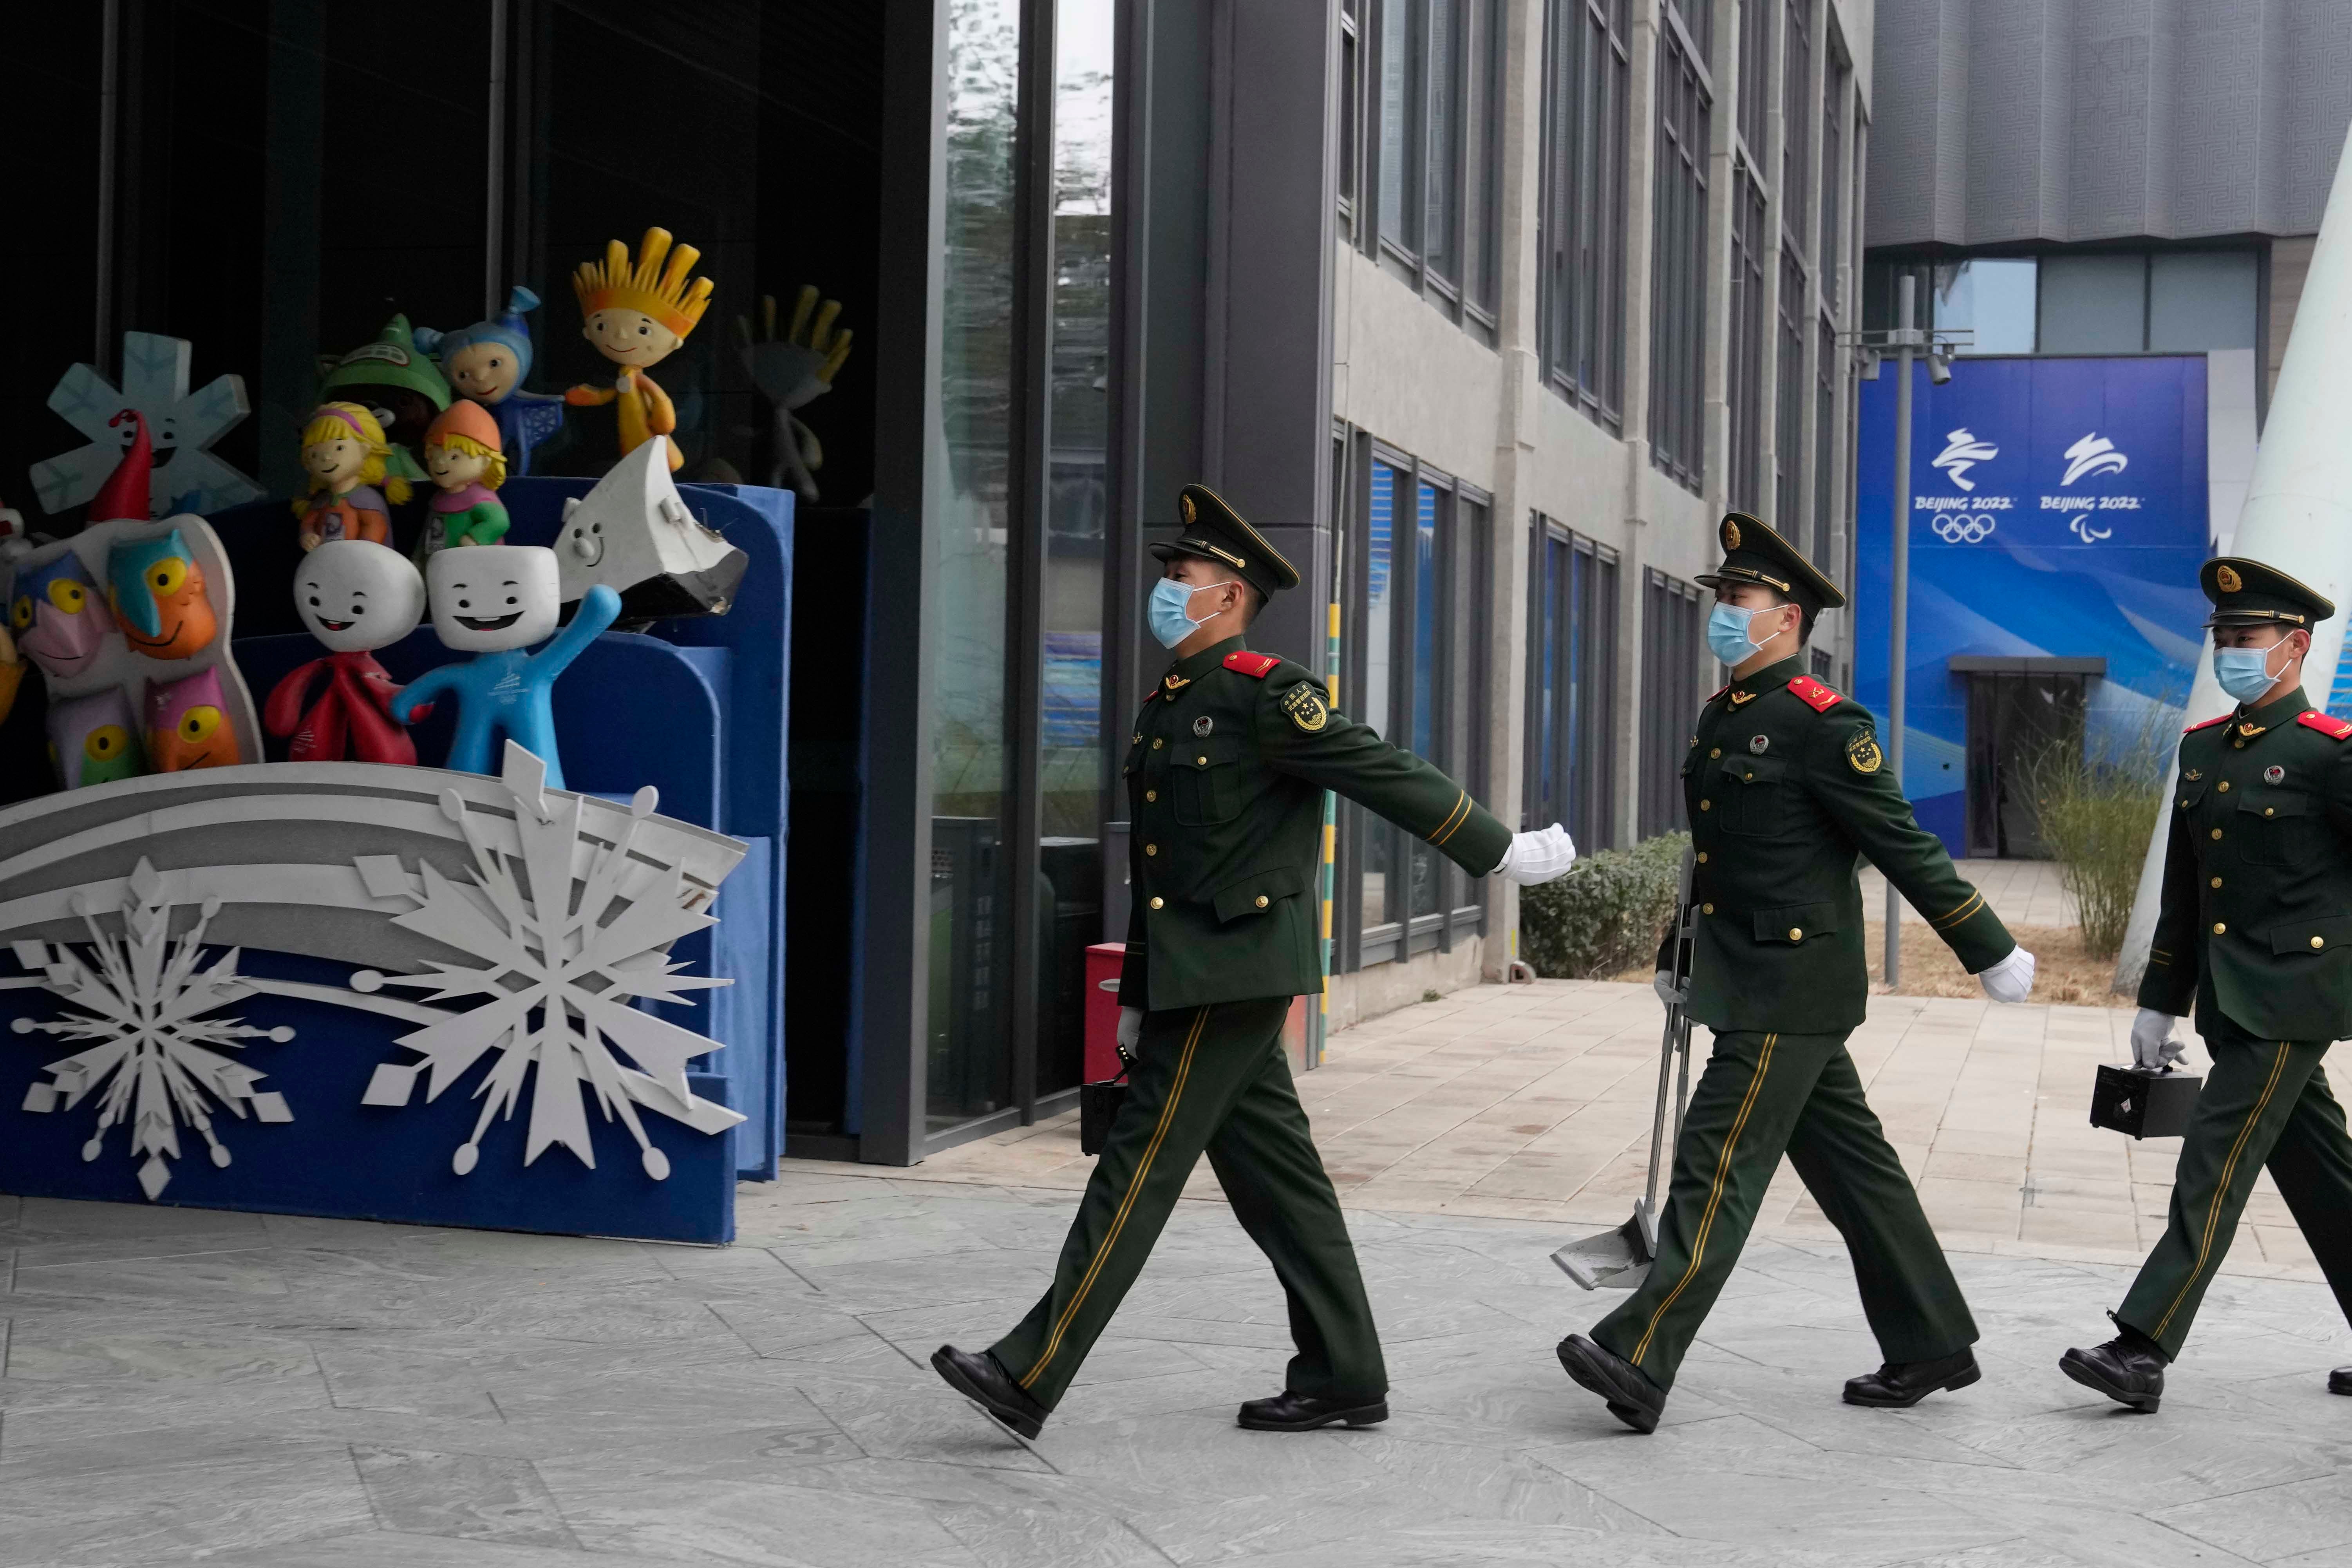 Polizisten vor den Maskottchen früherer Olympischer Winterspiele, Shougang Park, Peking, 21. Januar 2022.